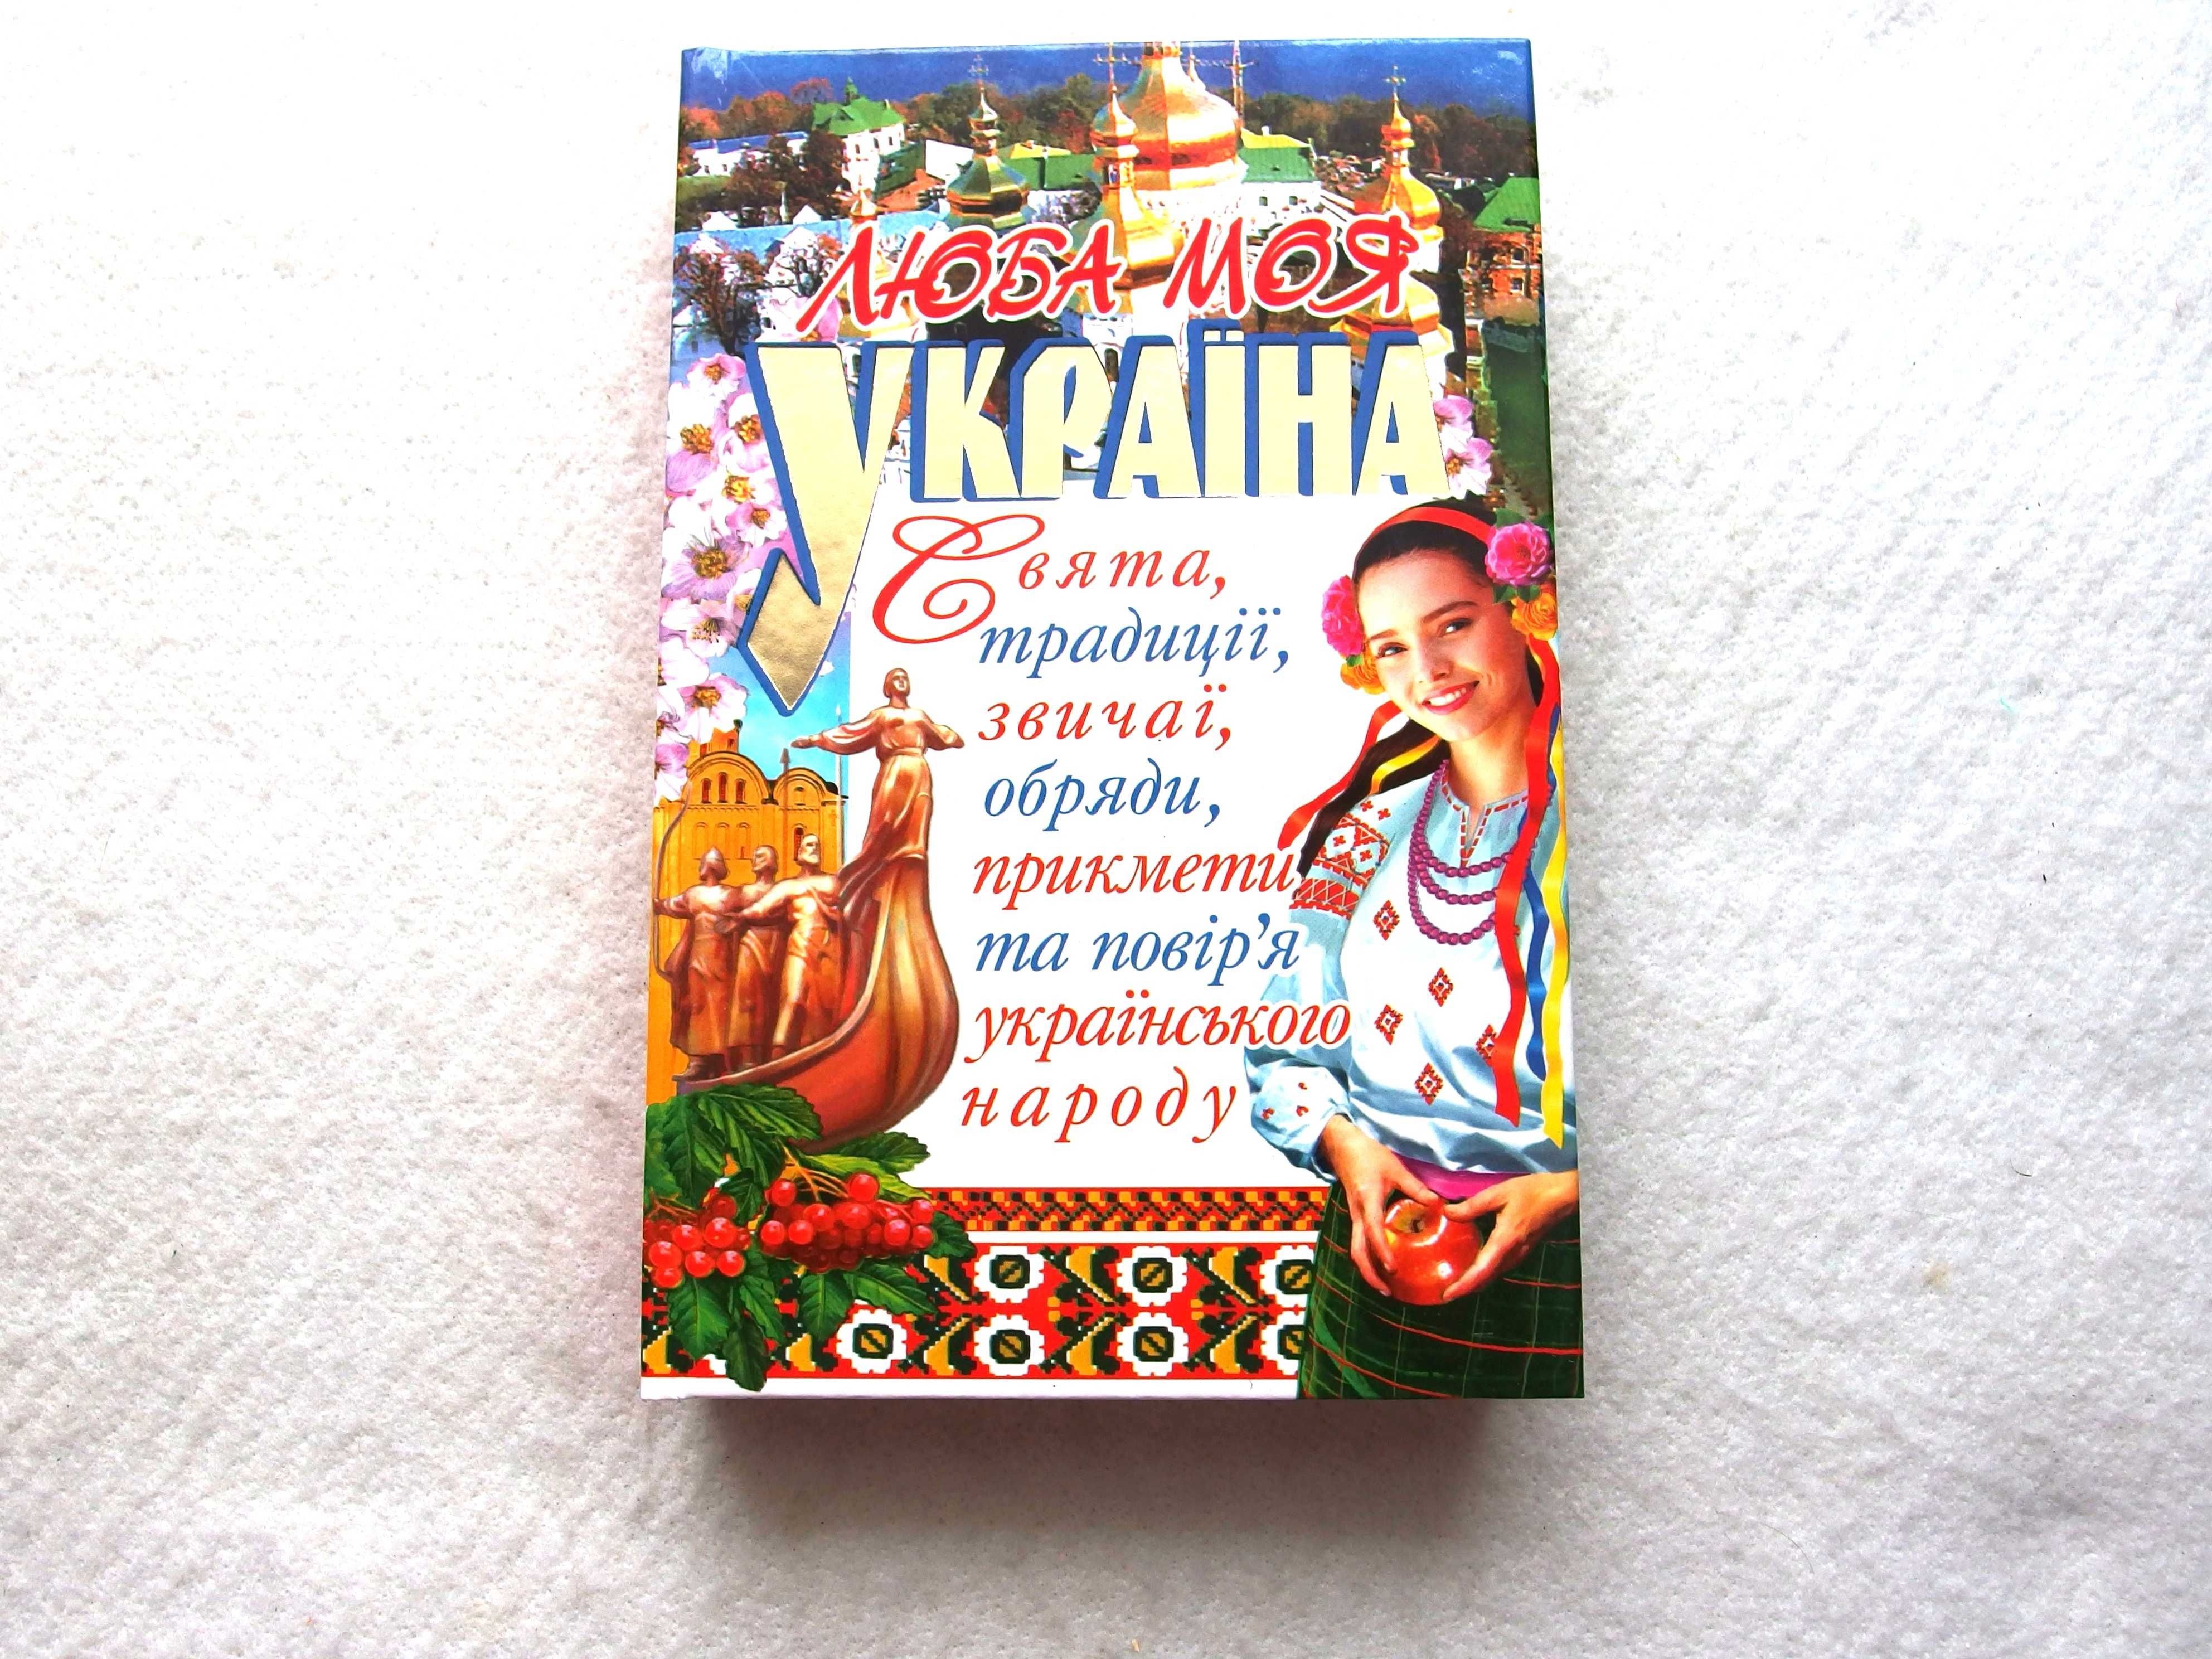 "Люба моя Україна. Свята, традиції, звичаї,  українського народу"